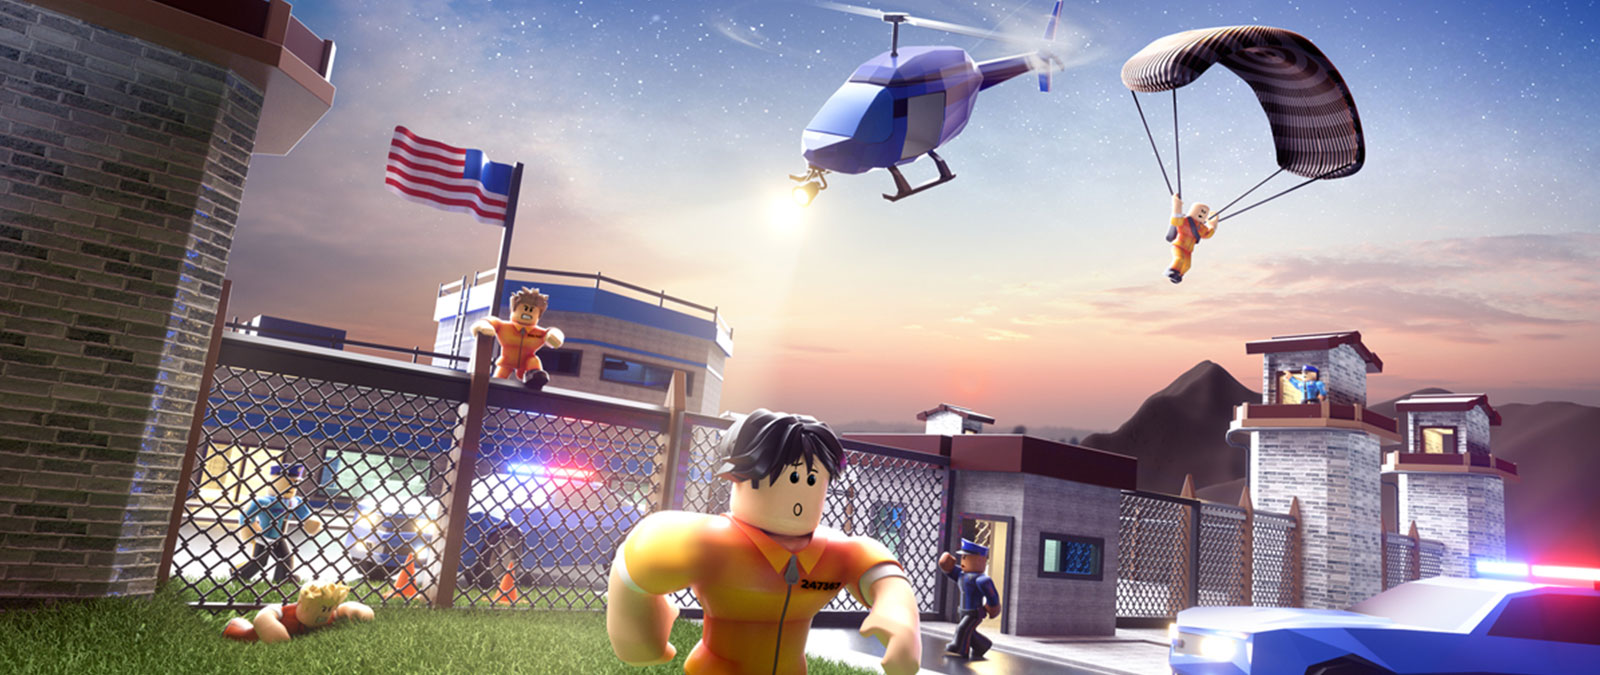 Χαρακτήρες του Roblox που δραπετεύουν από τη φυλακή ενώ τους κυνηγά η αστυνομία στο παιχνίδι Jailbreak